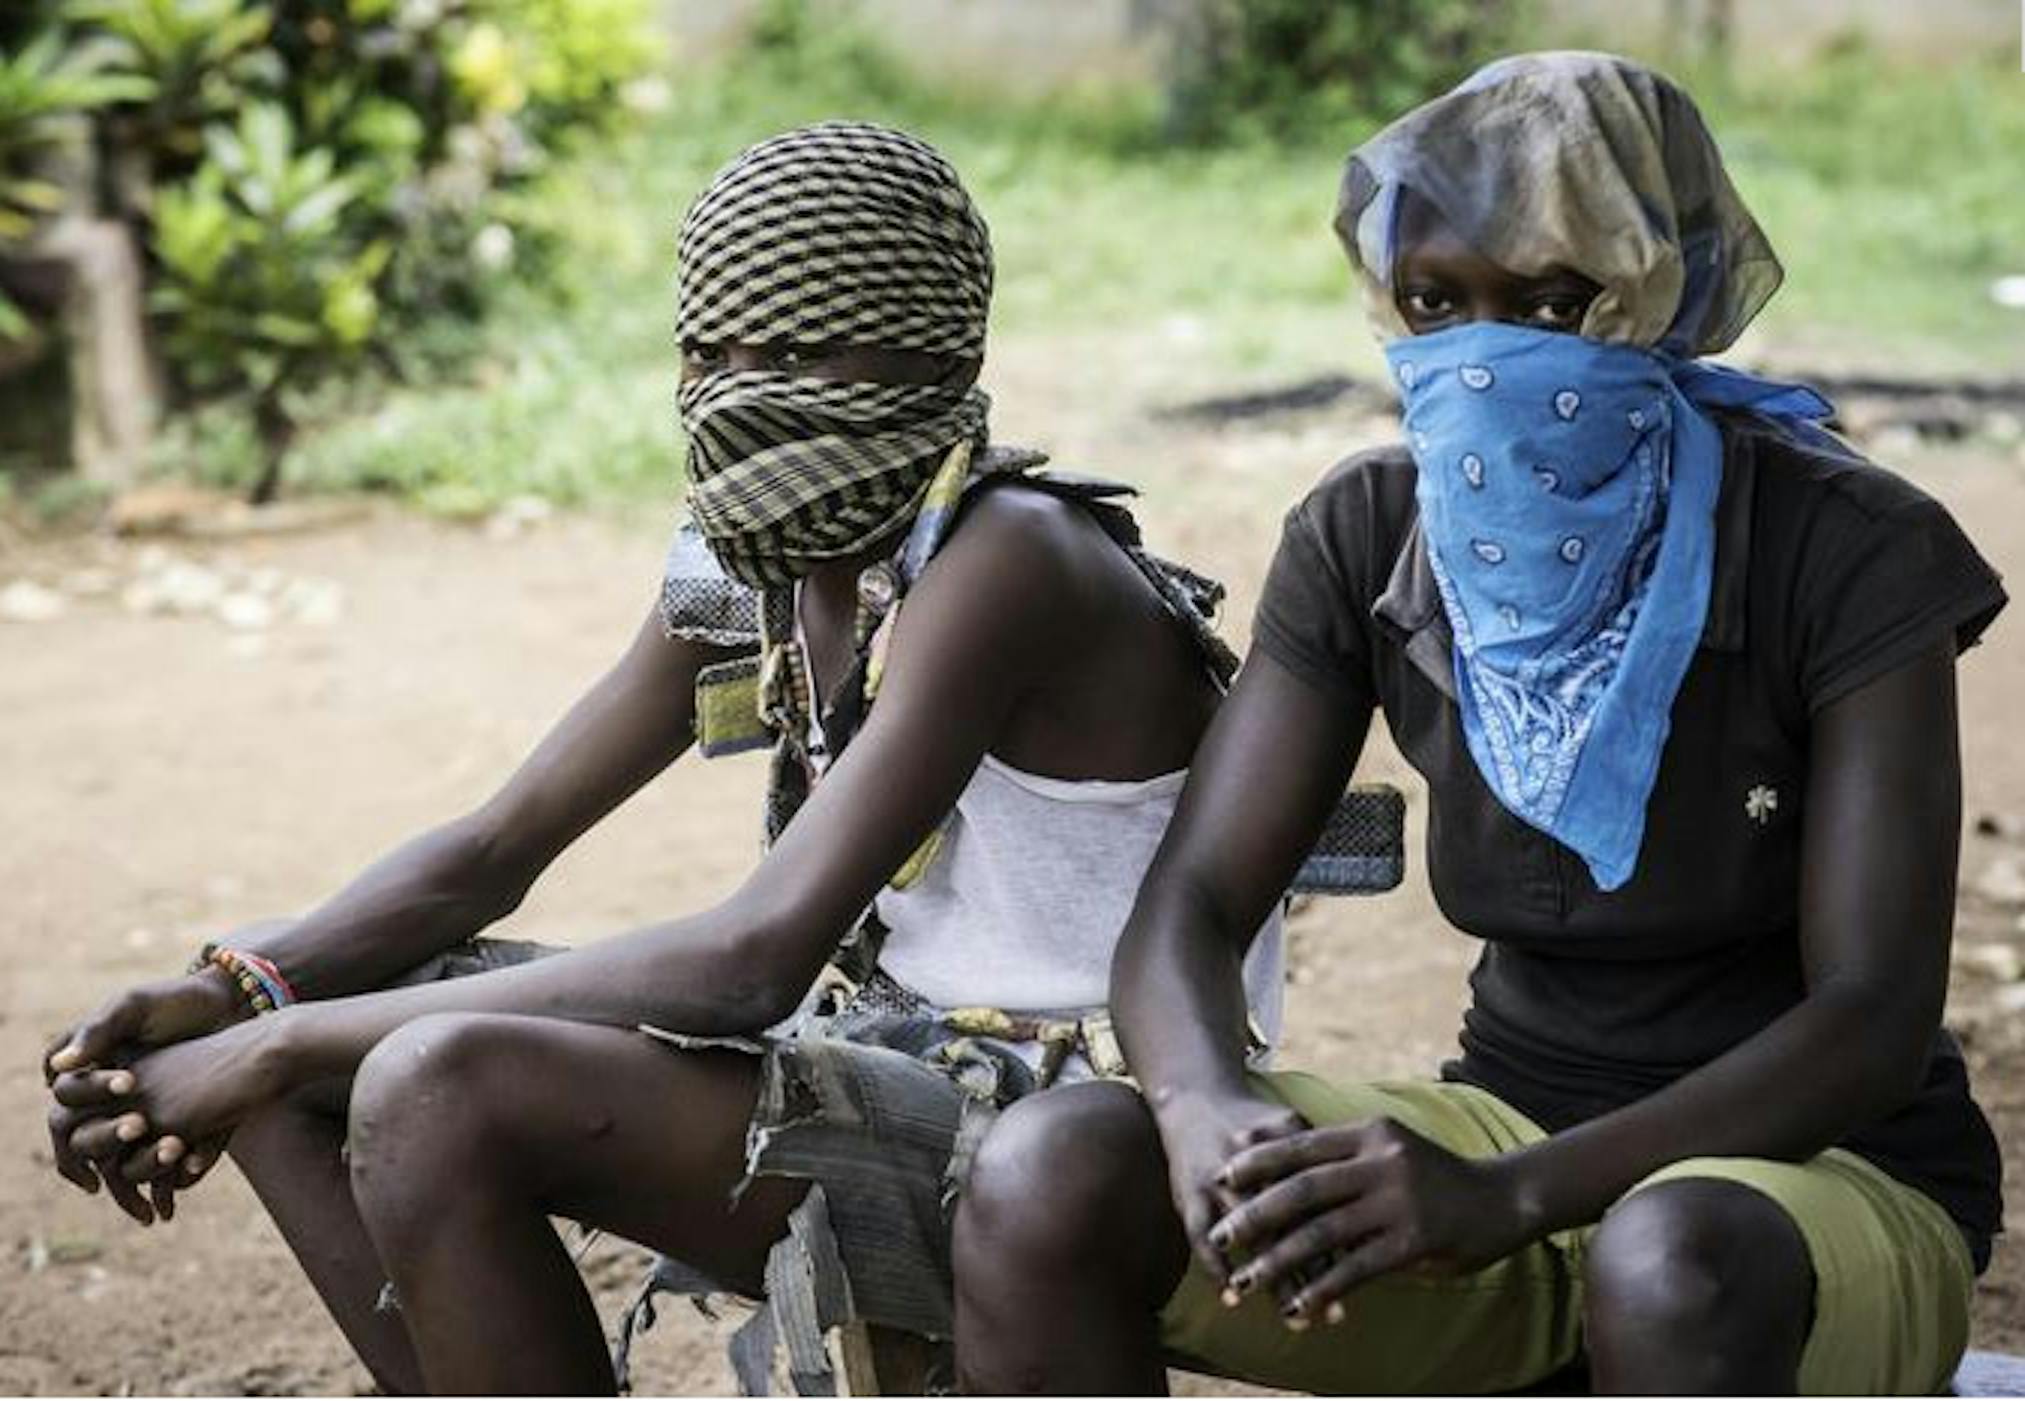 Giovanissimi combattenti nella Repubblica Centrafricana - ©ANSA